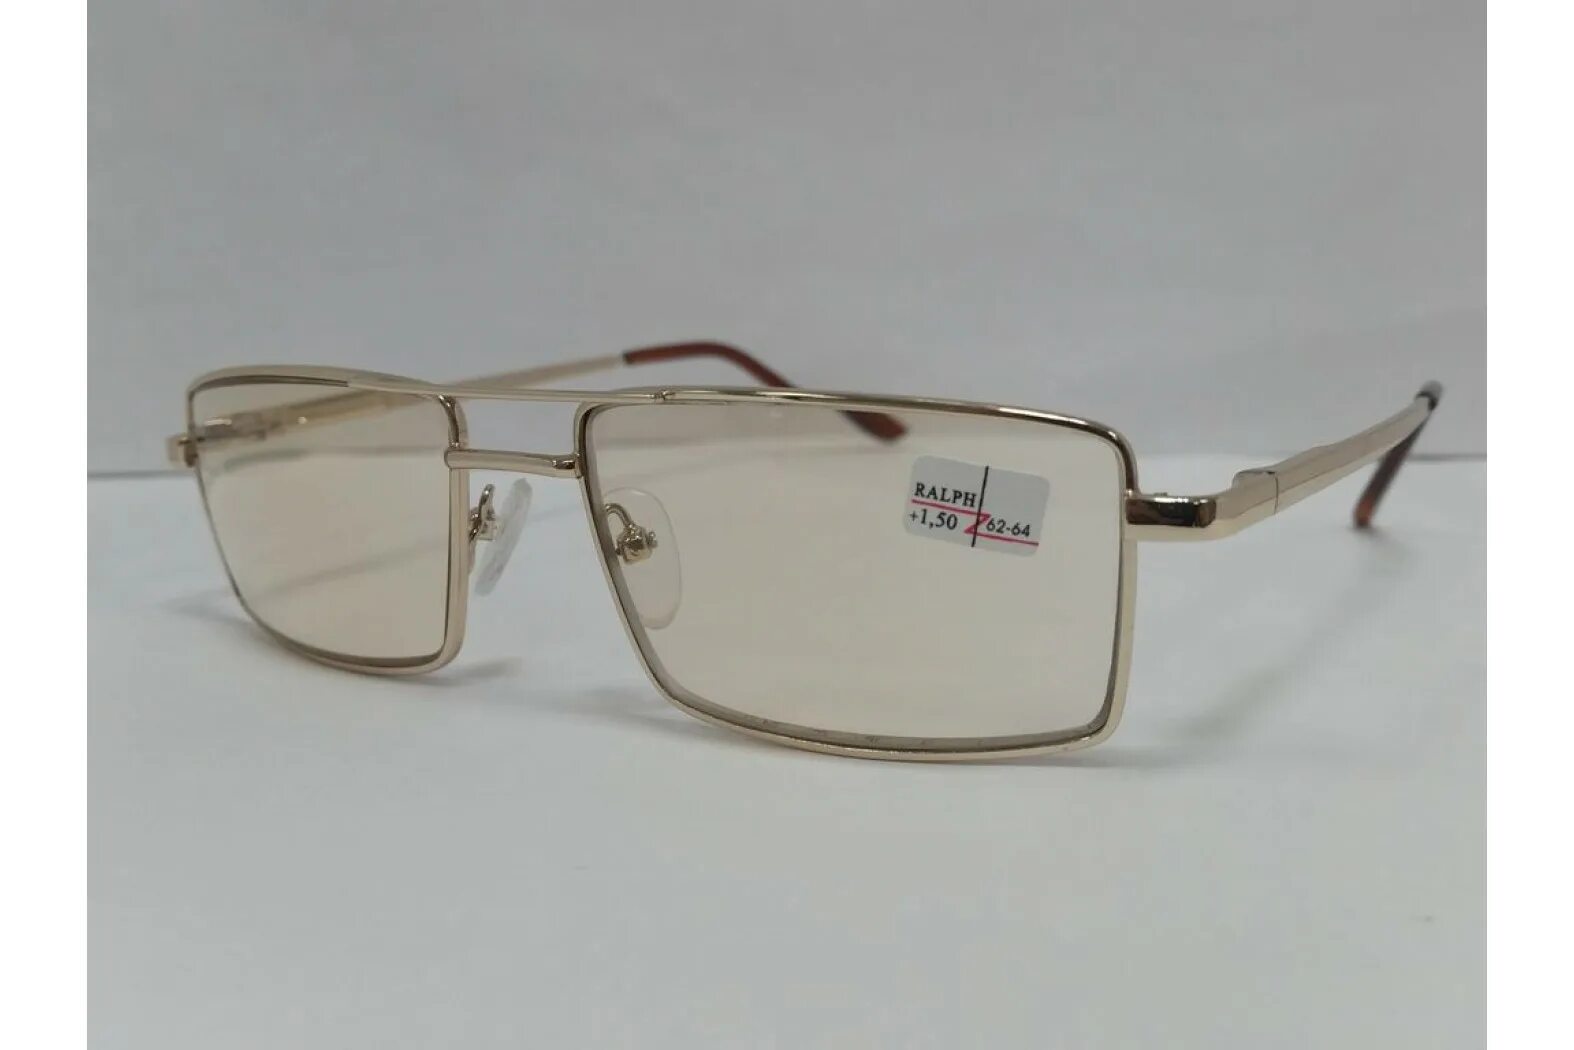 Хамелеон очки москва. Очки Ральф для зрения тонированные. Очки хамелеоны фотохромные очки. Zen очки хамелеон 1900 h. Очки хамельны стекло 62-64мм.